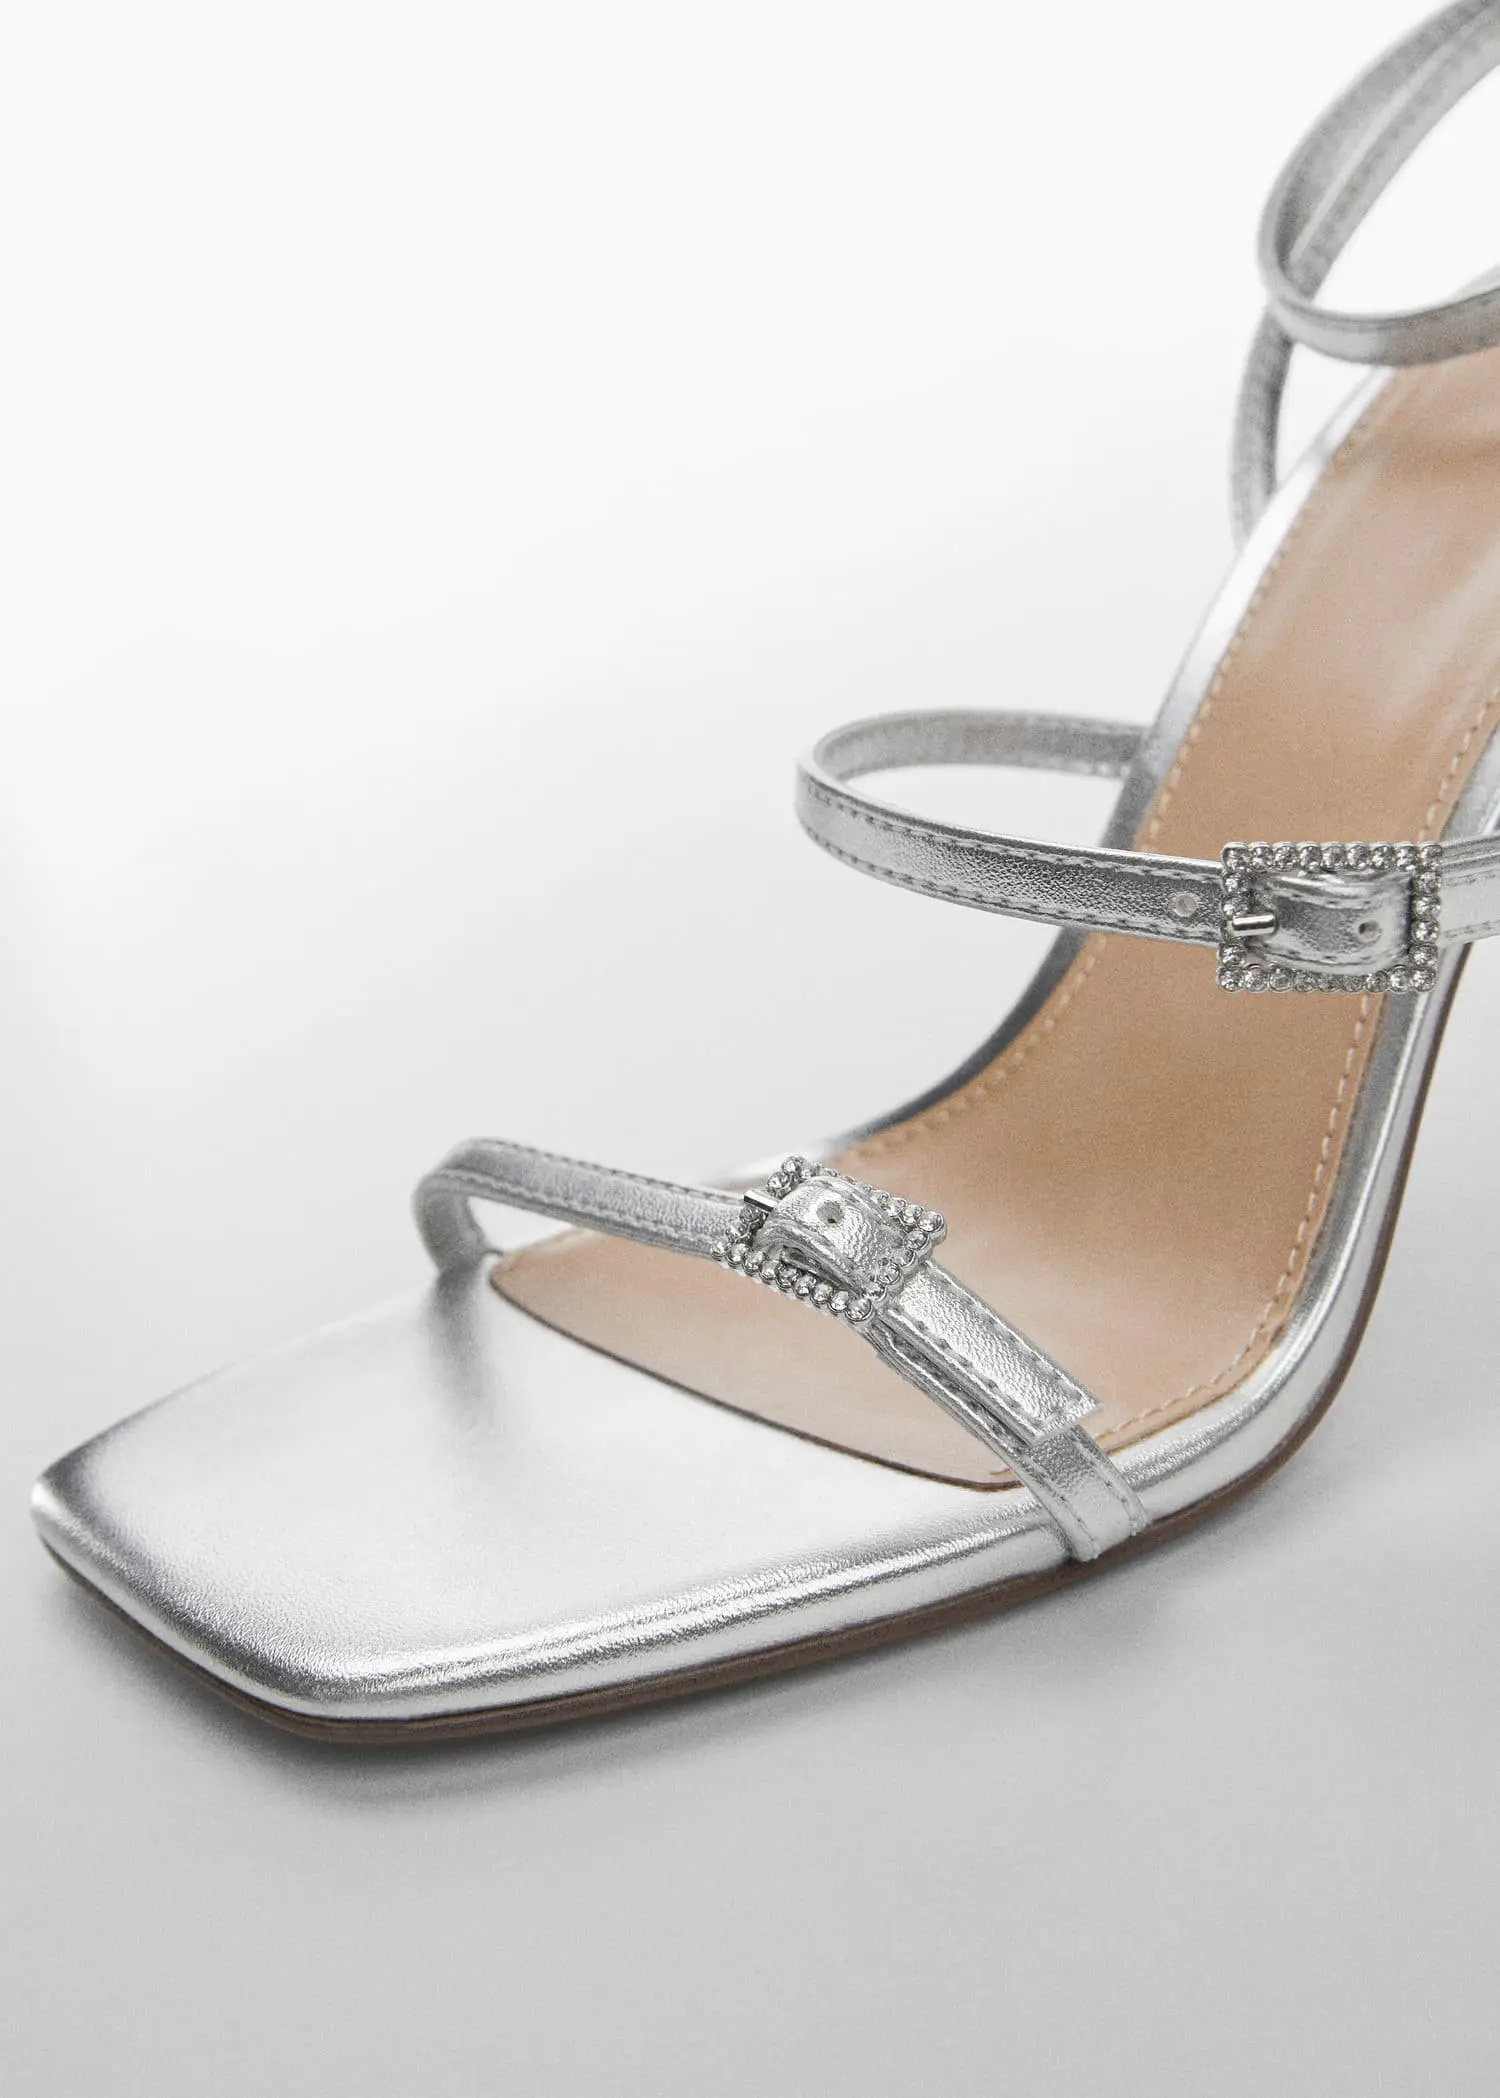 Mango Metallic heel sandals. a close up of a pair of silver high heels. 